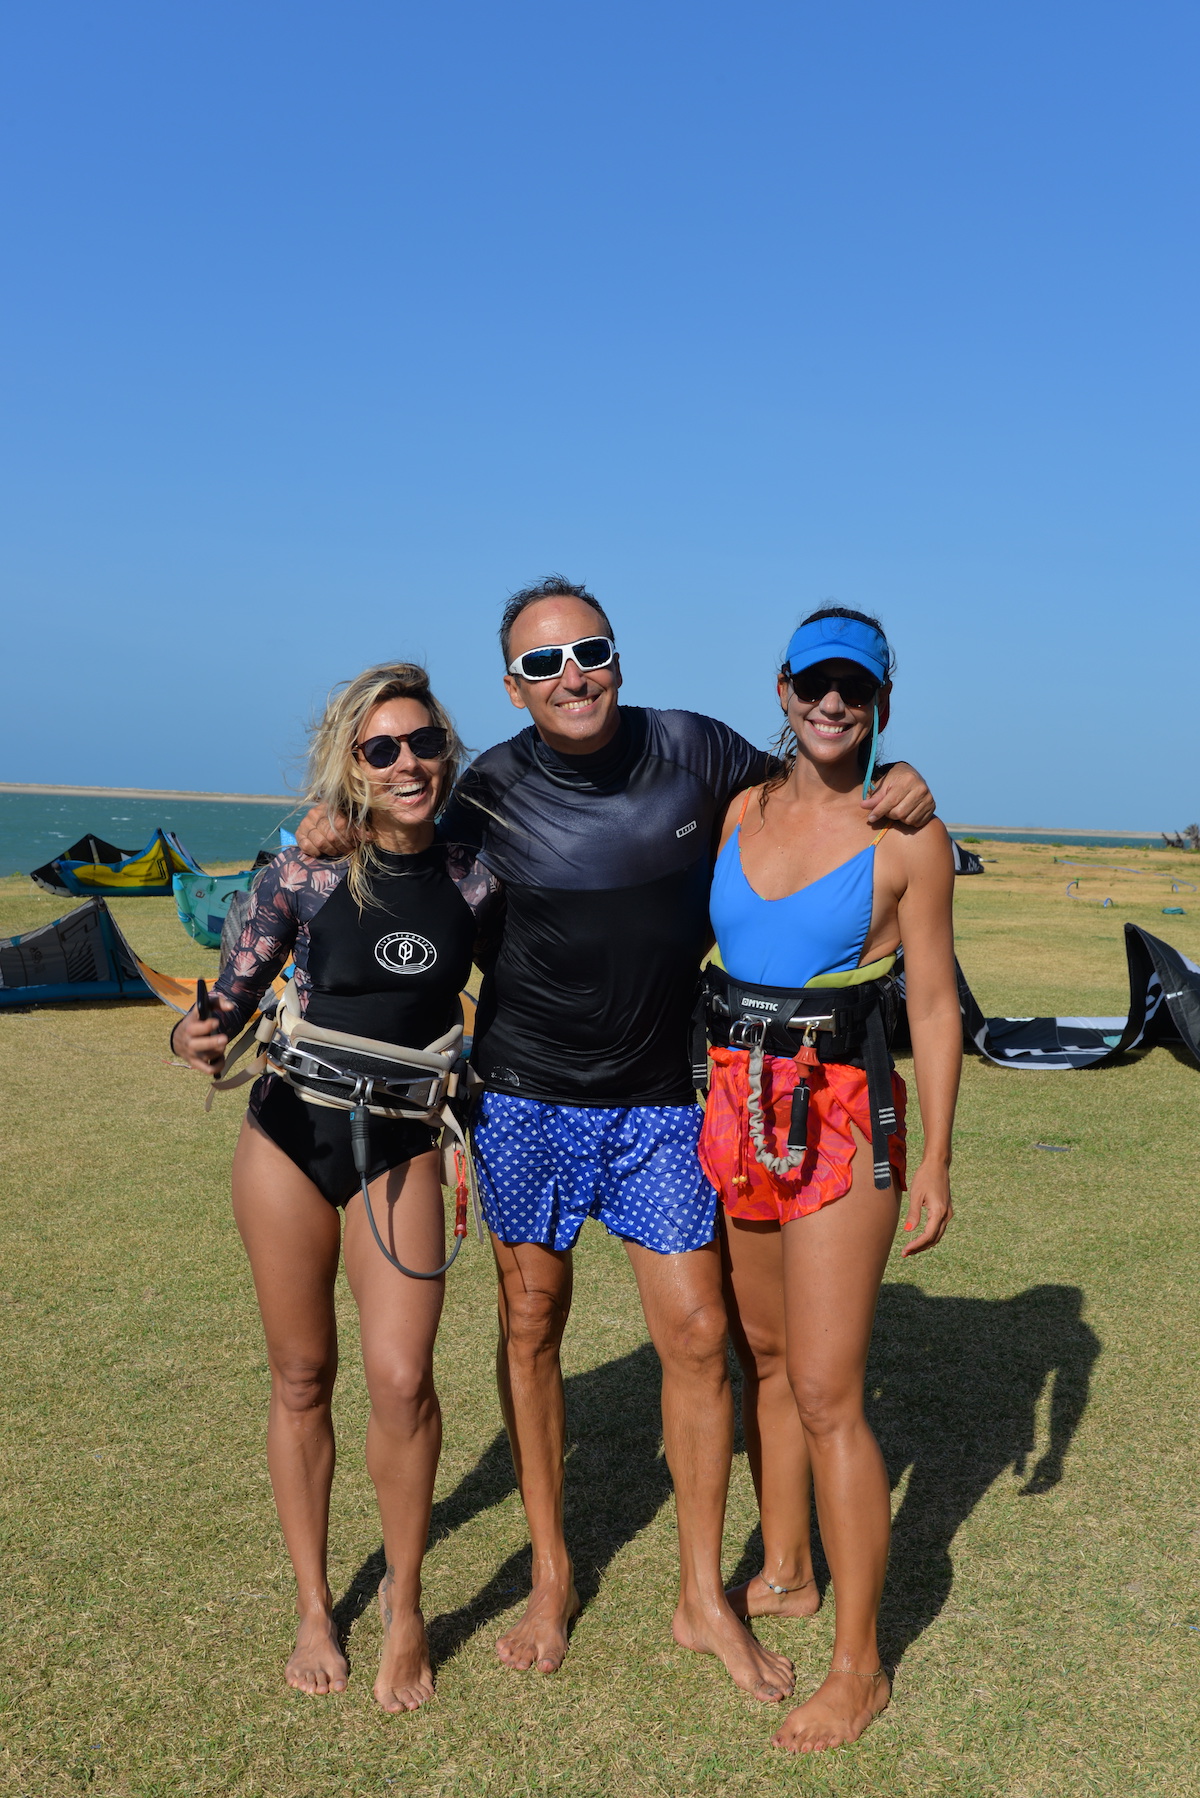 Jornalista da Band, Cris Dias, aterrissa no Ceará para gravação sobre talentos do kitesurfe